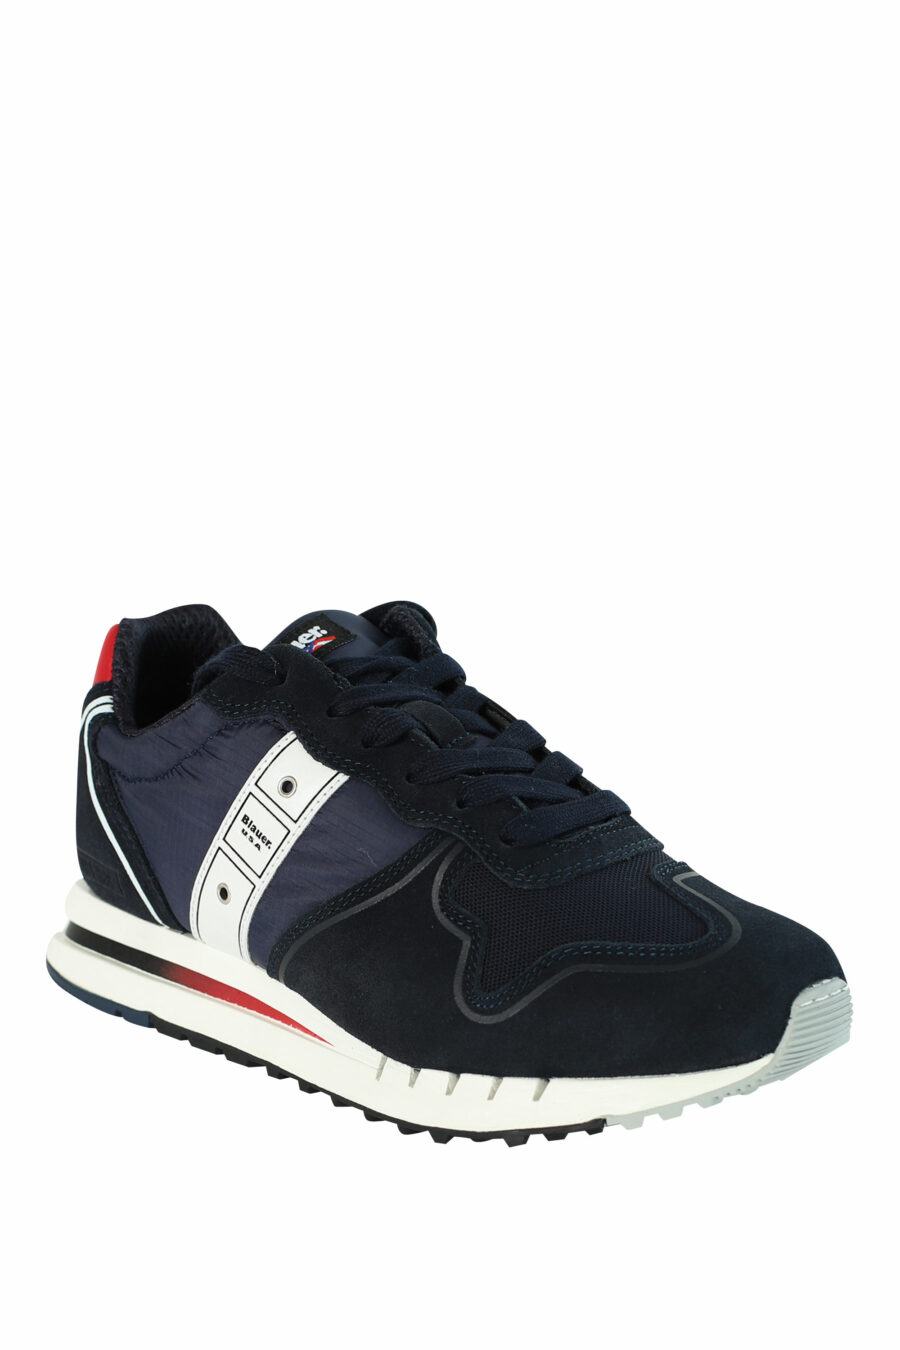 Sapatos "QUARTZ" azuis com pormenores vermelhos - 8058156499454 2